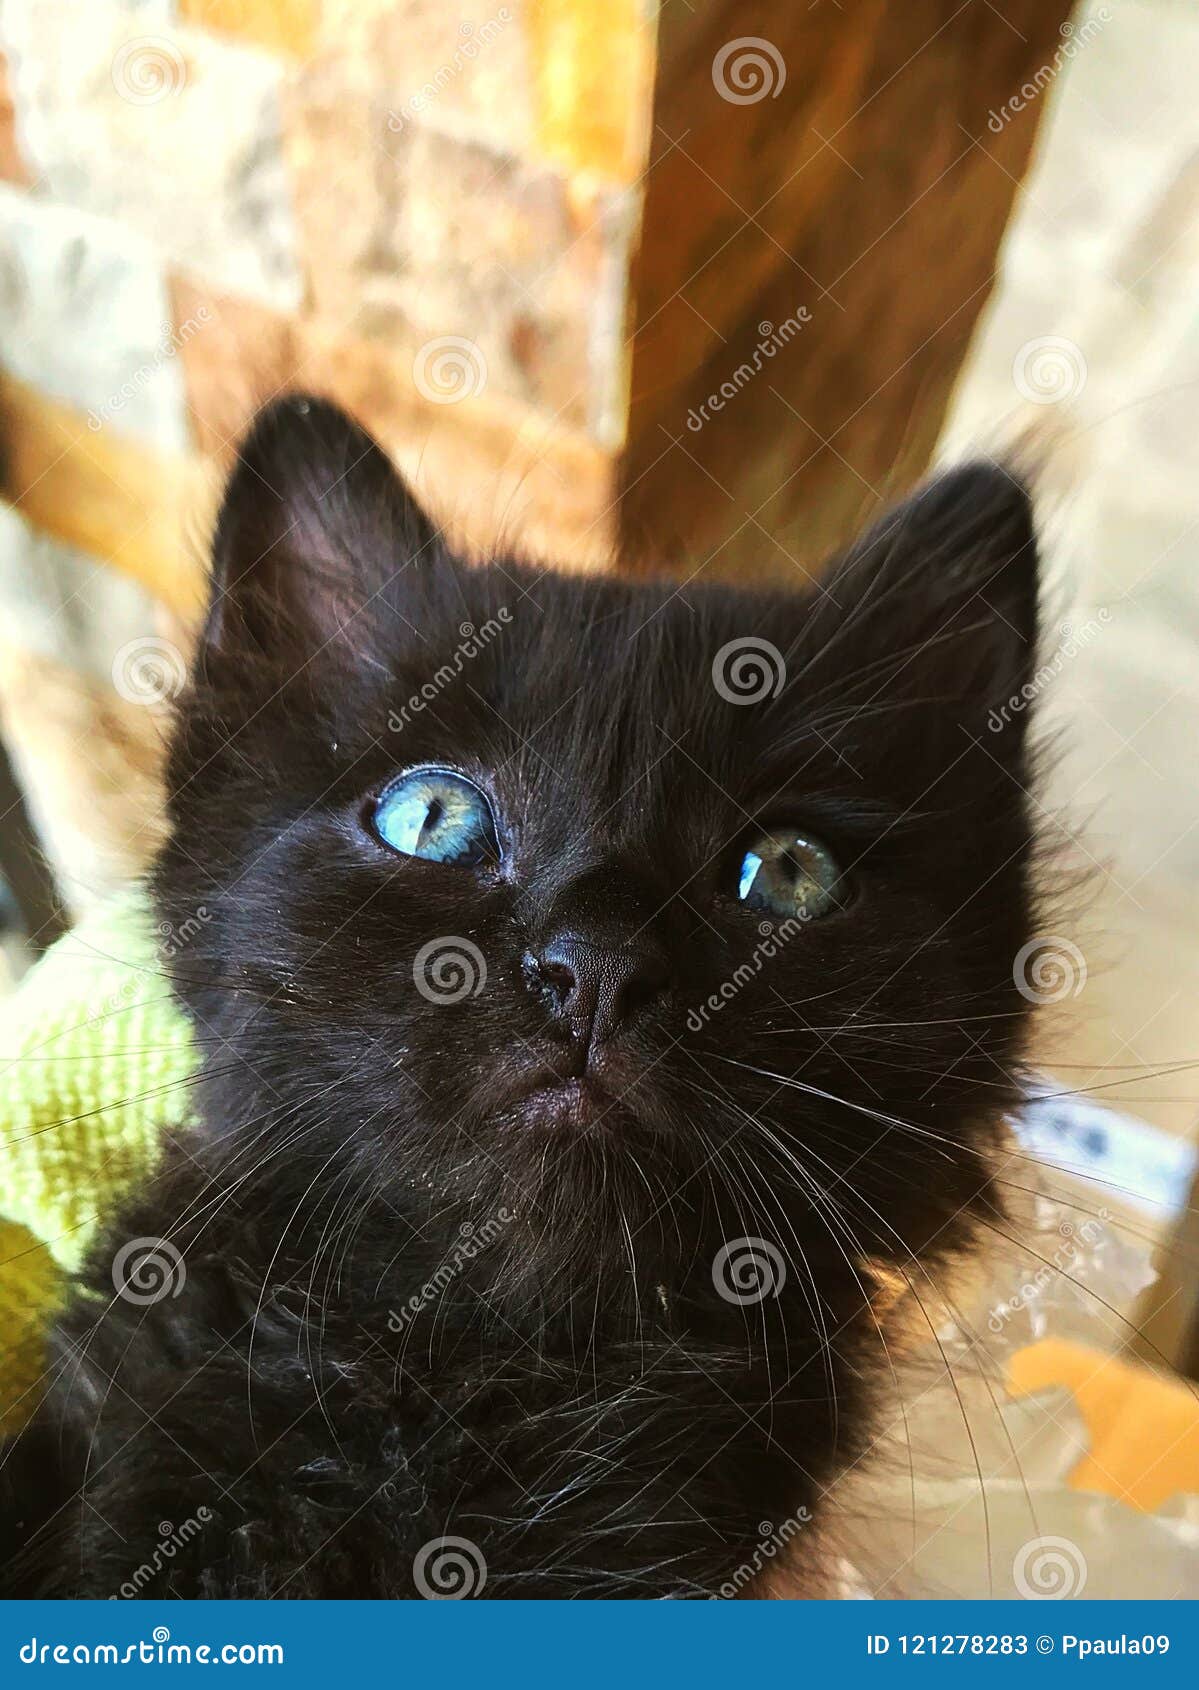 Black Cat With Deep Blue Eyes Stock Image Image Of Association Irises 121278283